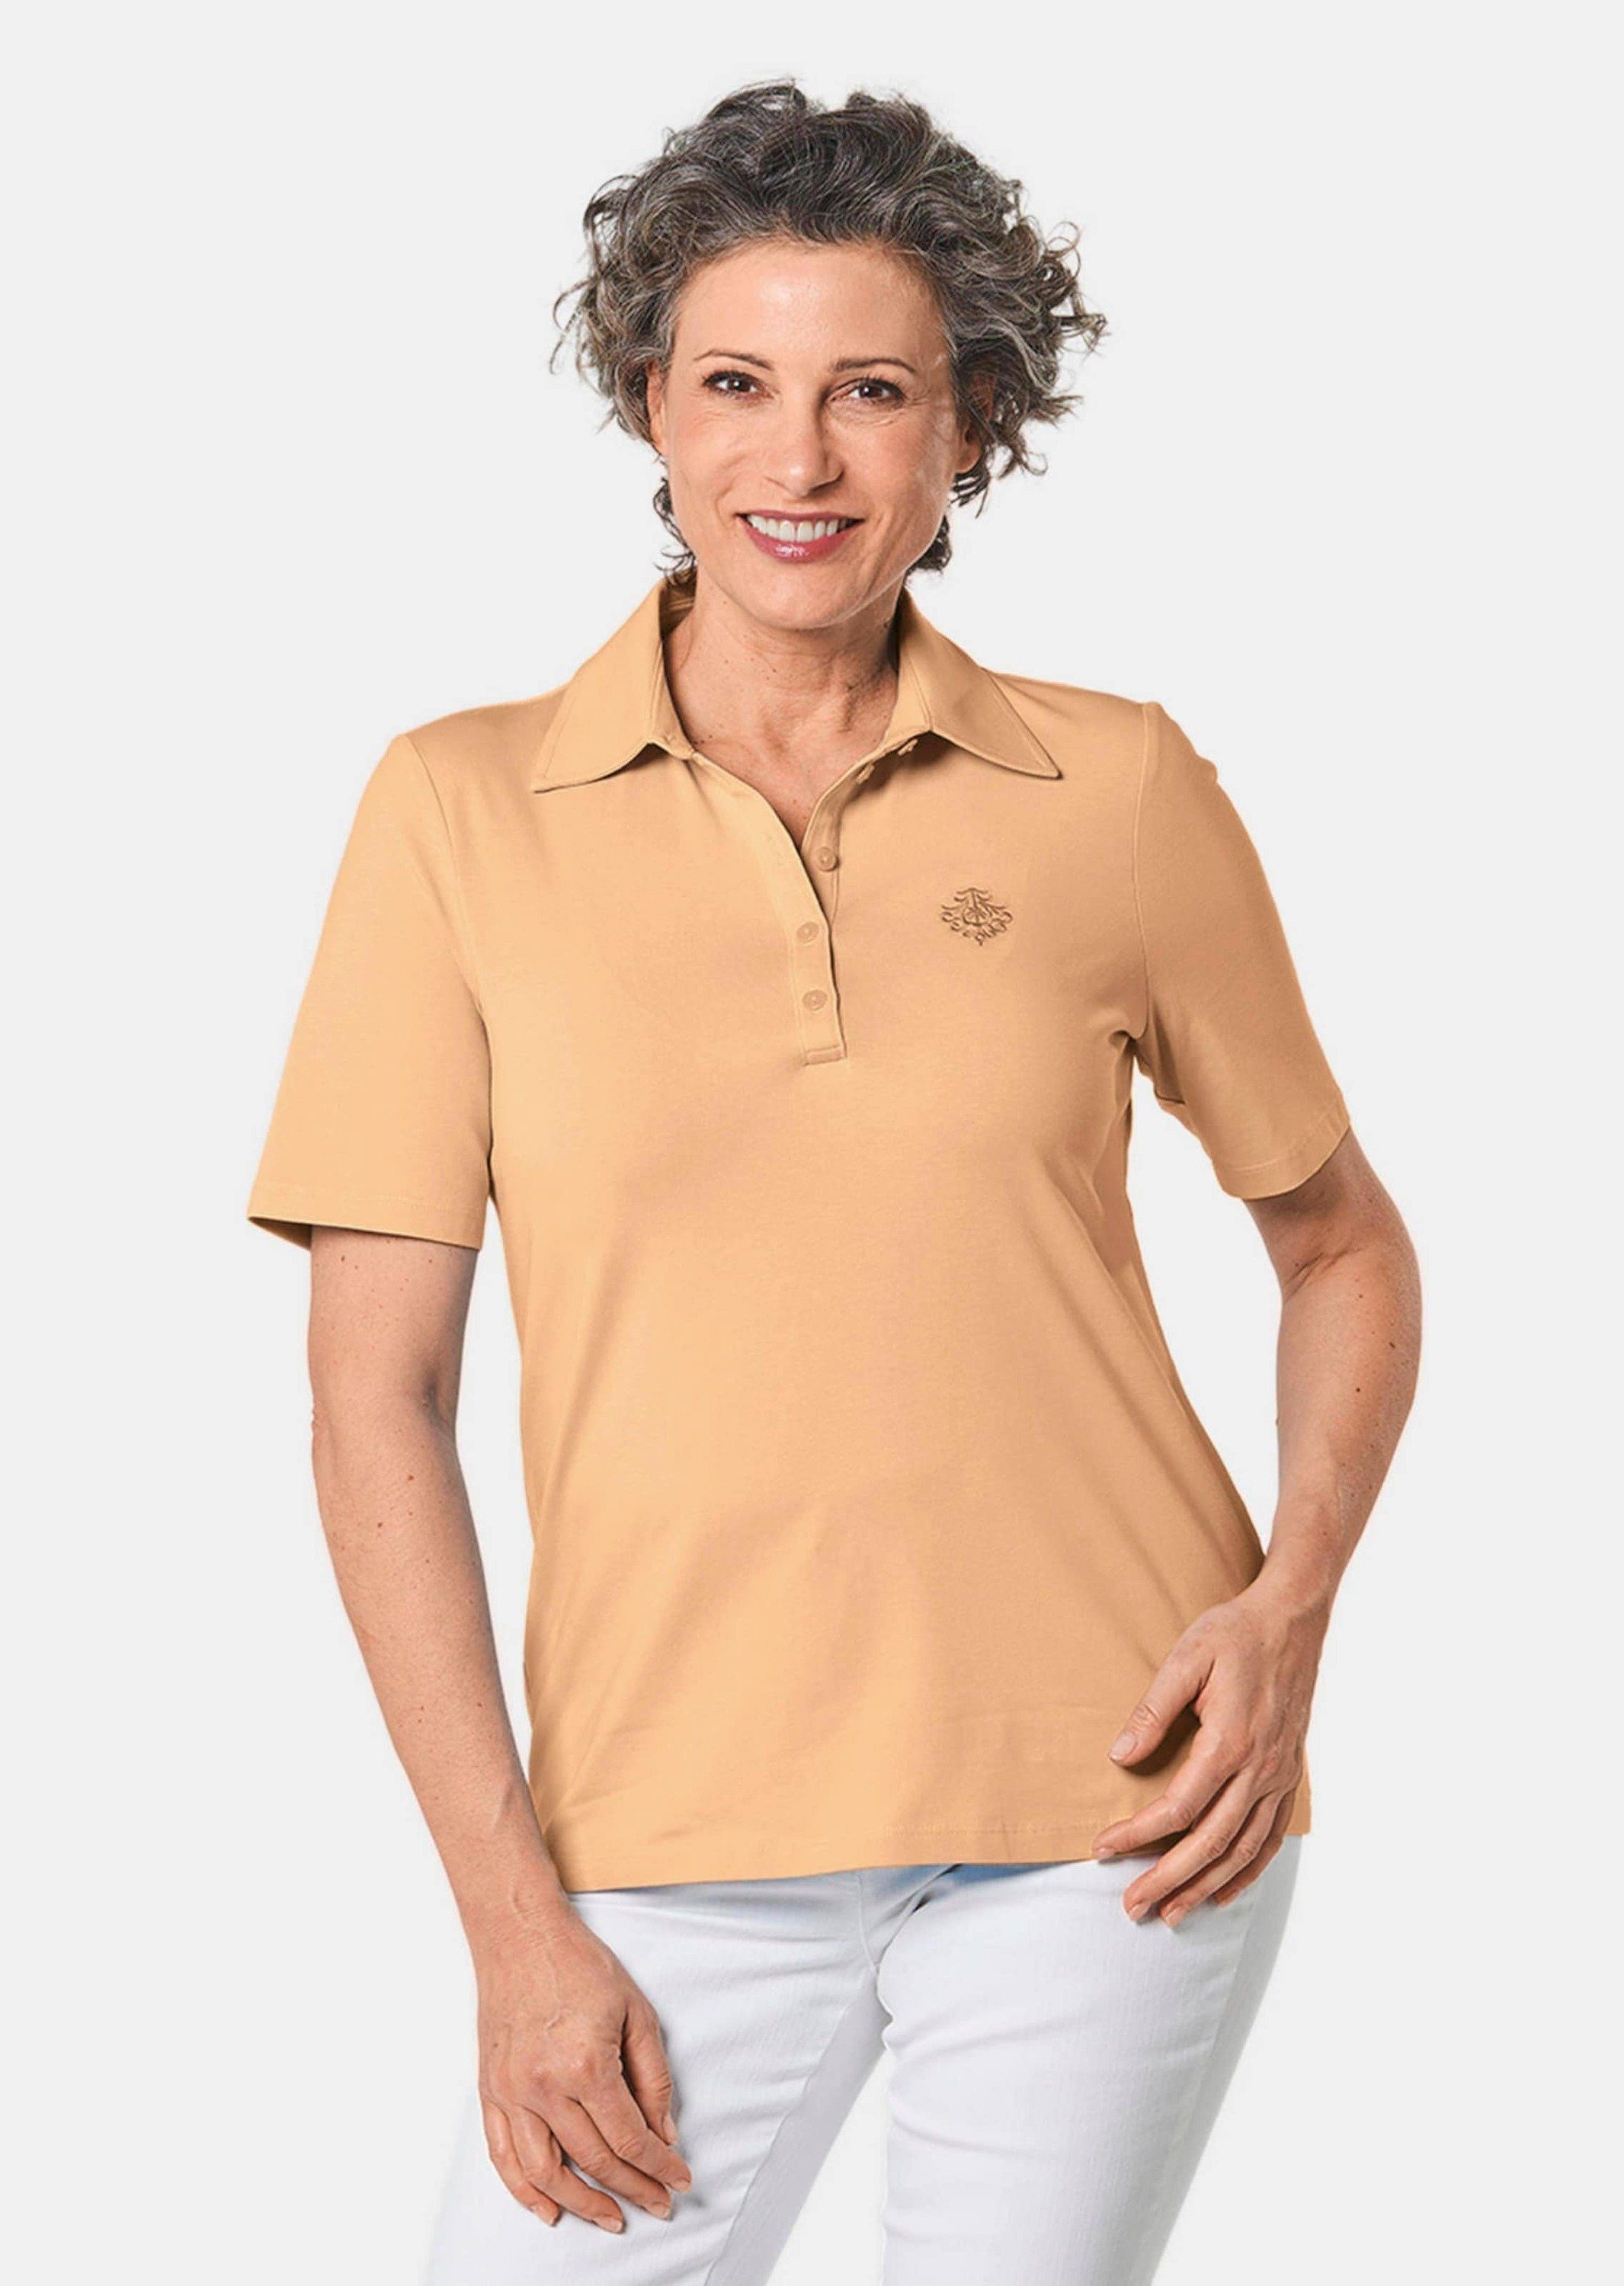 GOLDNER Poloshirt Kurzgröße: Stretchbequemes Poloshirt melba